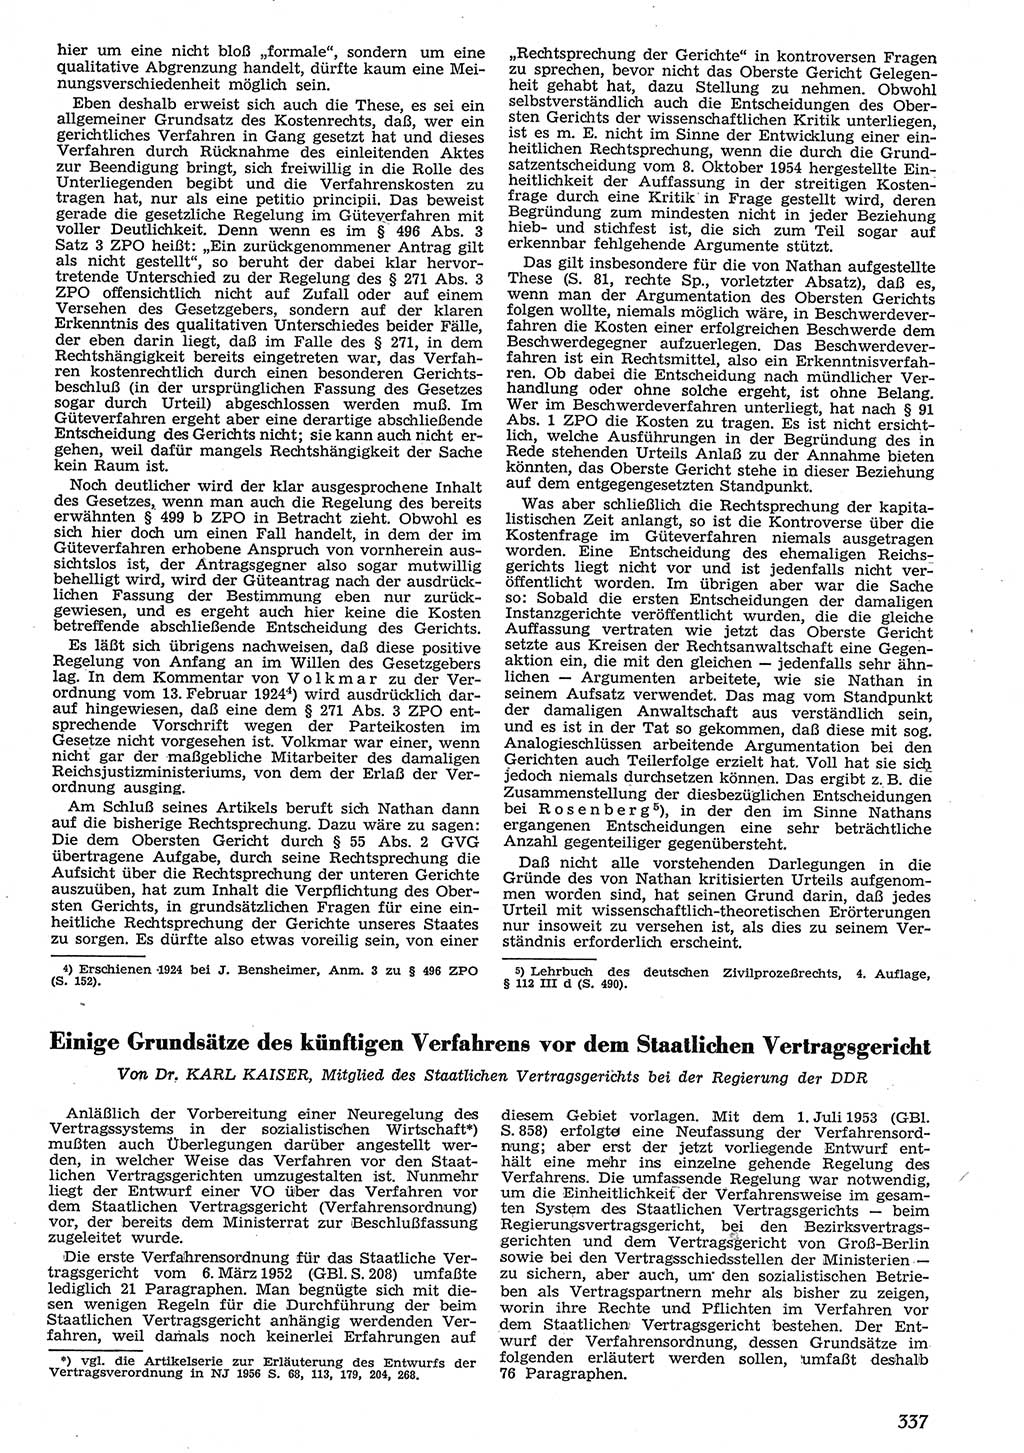 Neue Justiz (NJ), Zeitschrift für Recht und Rechtswissenschaft [Deutsche Demokratische Republik (DDR)], 10. Jahrgang 1956, Seite 337 (NJ DDR 1956, S. 337)